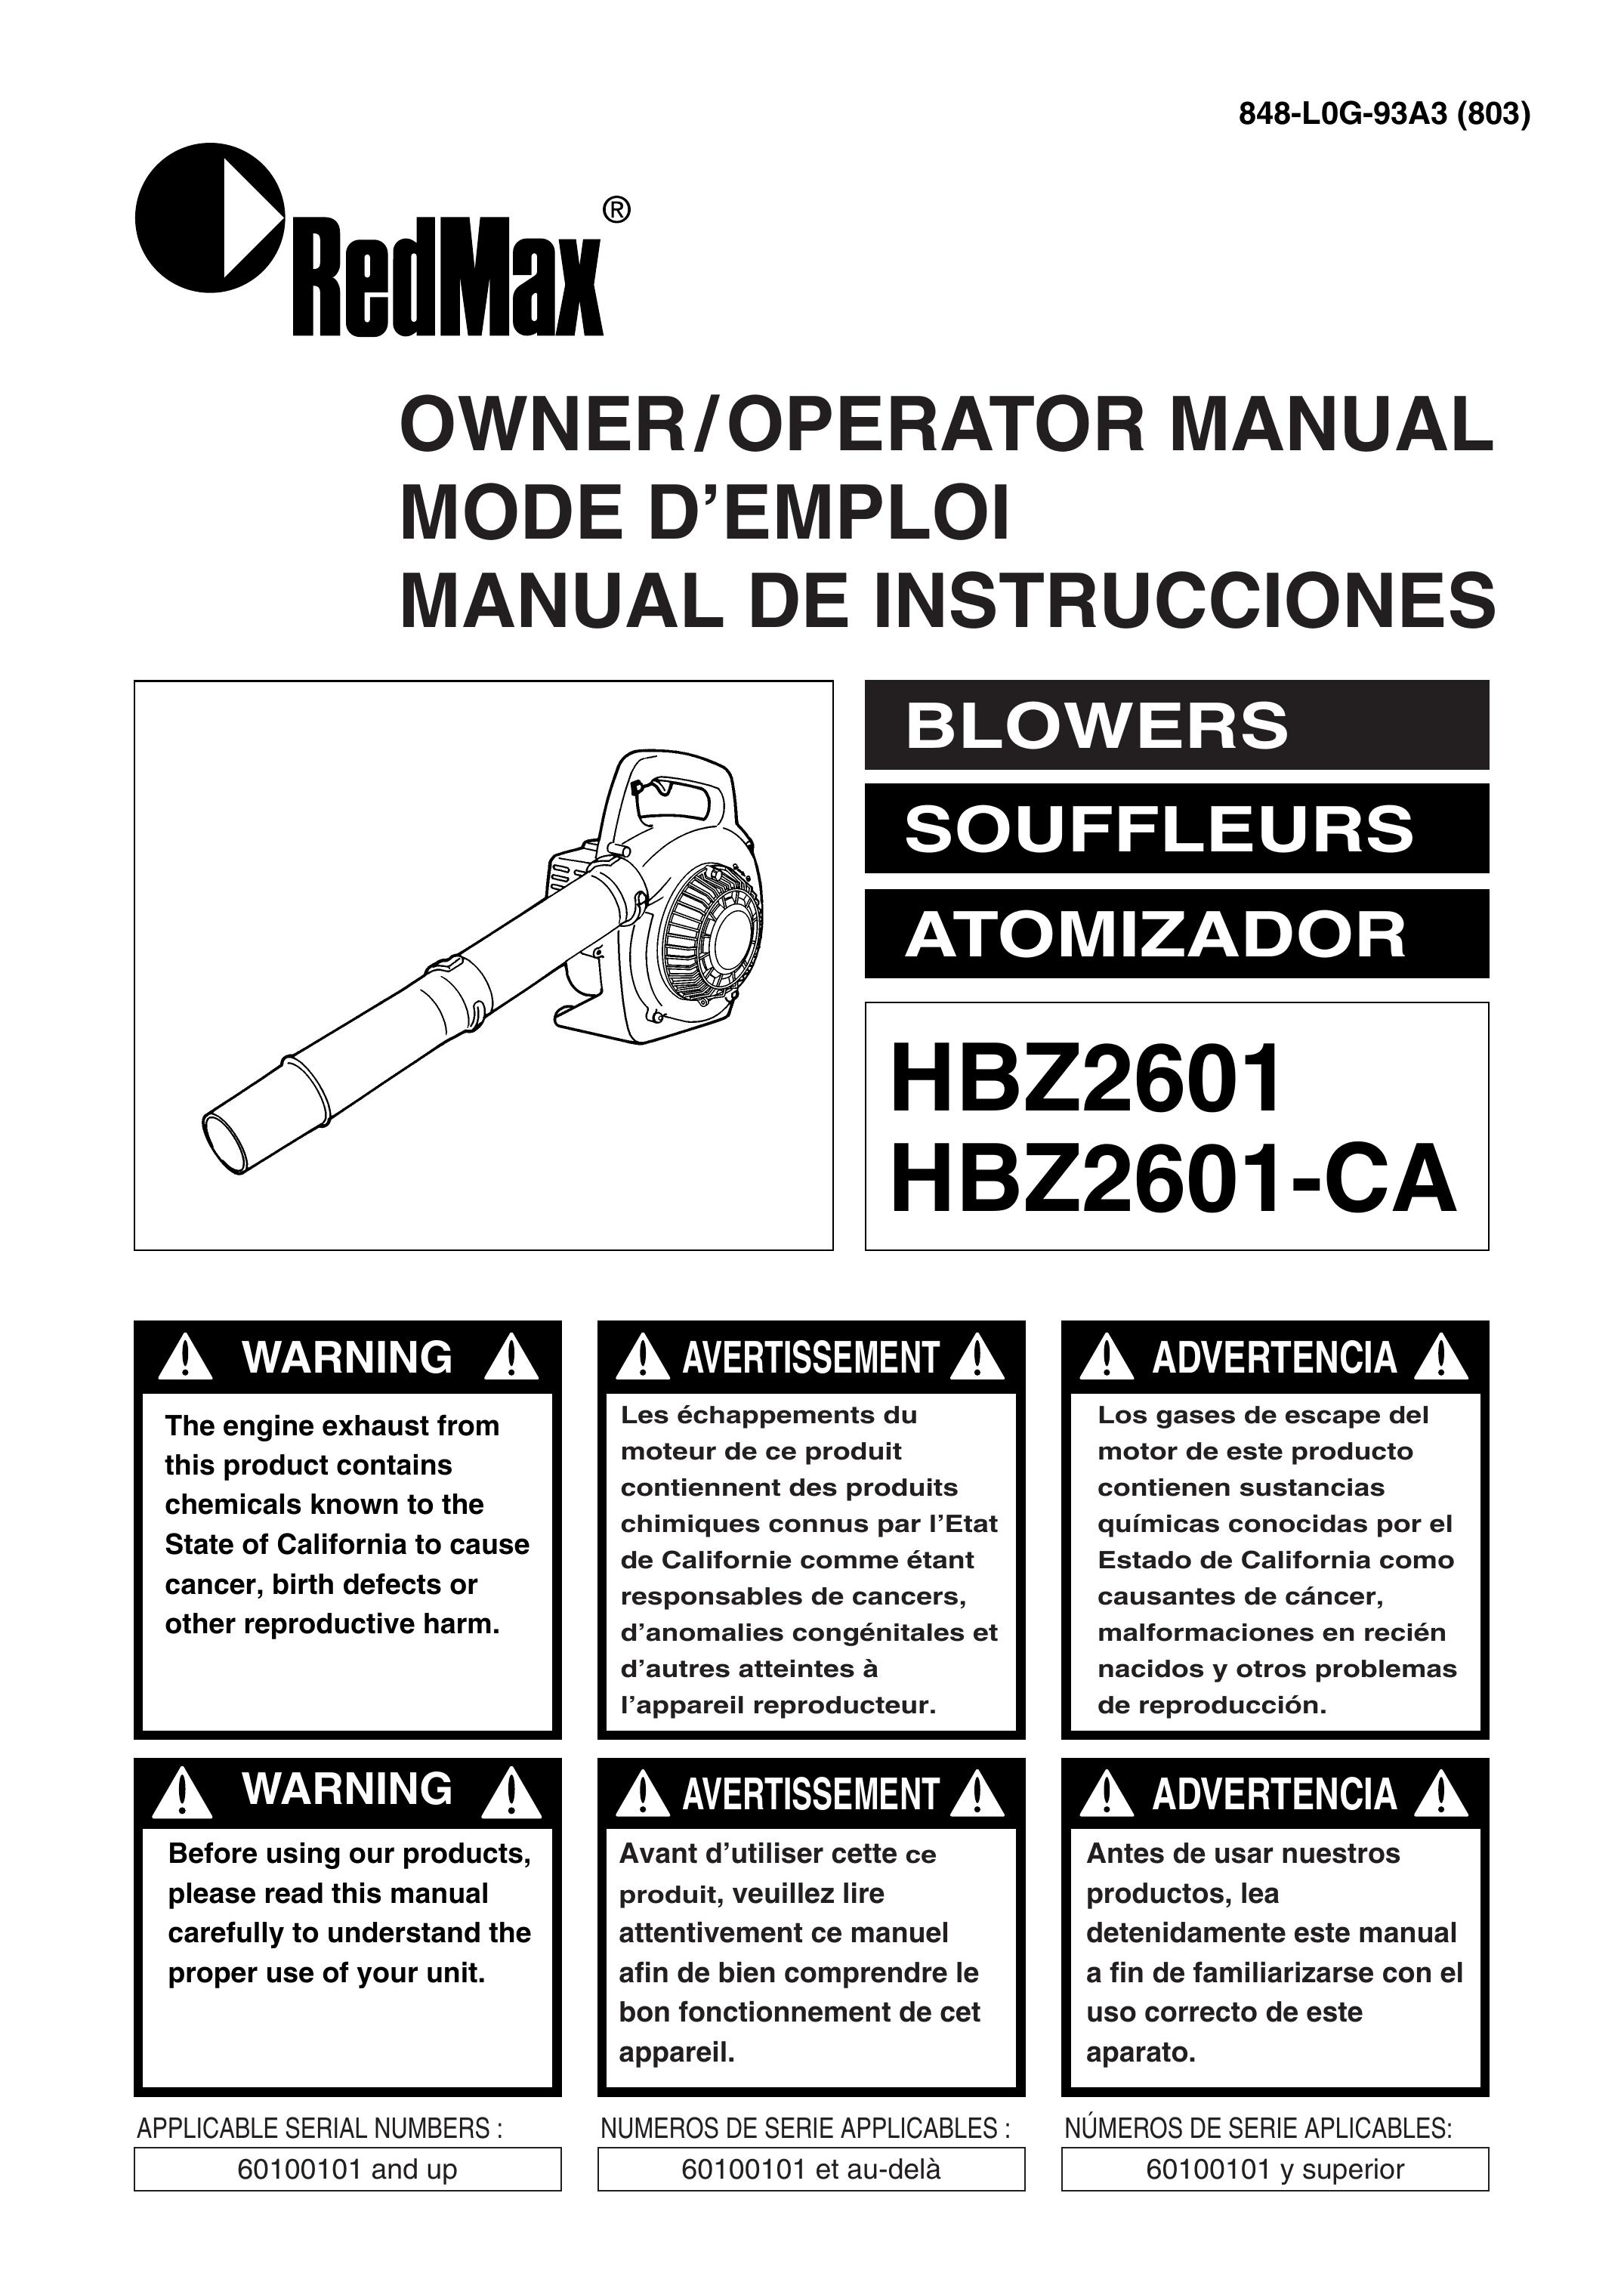 RedMax HBZ2601-CA Blower User Manual